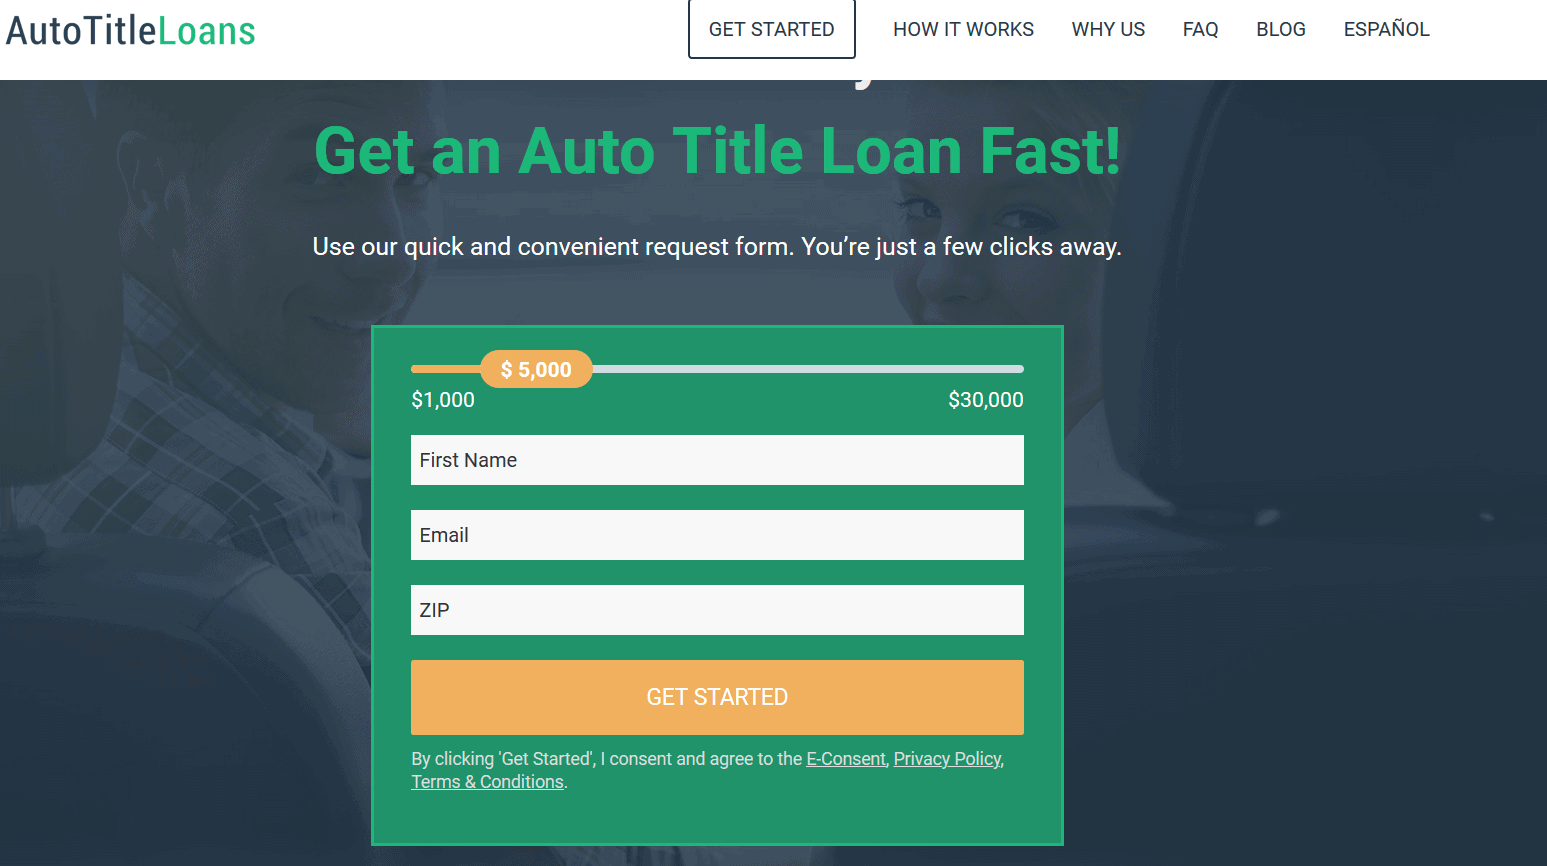 Auto Title Loans Review...